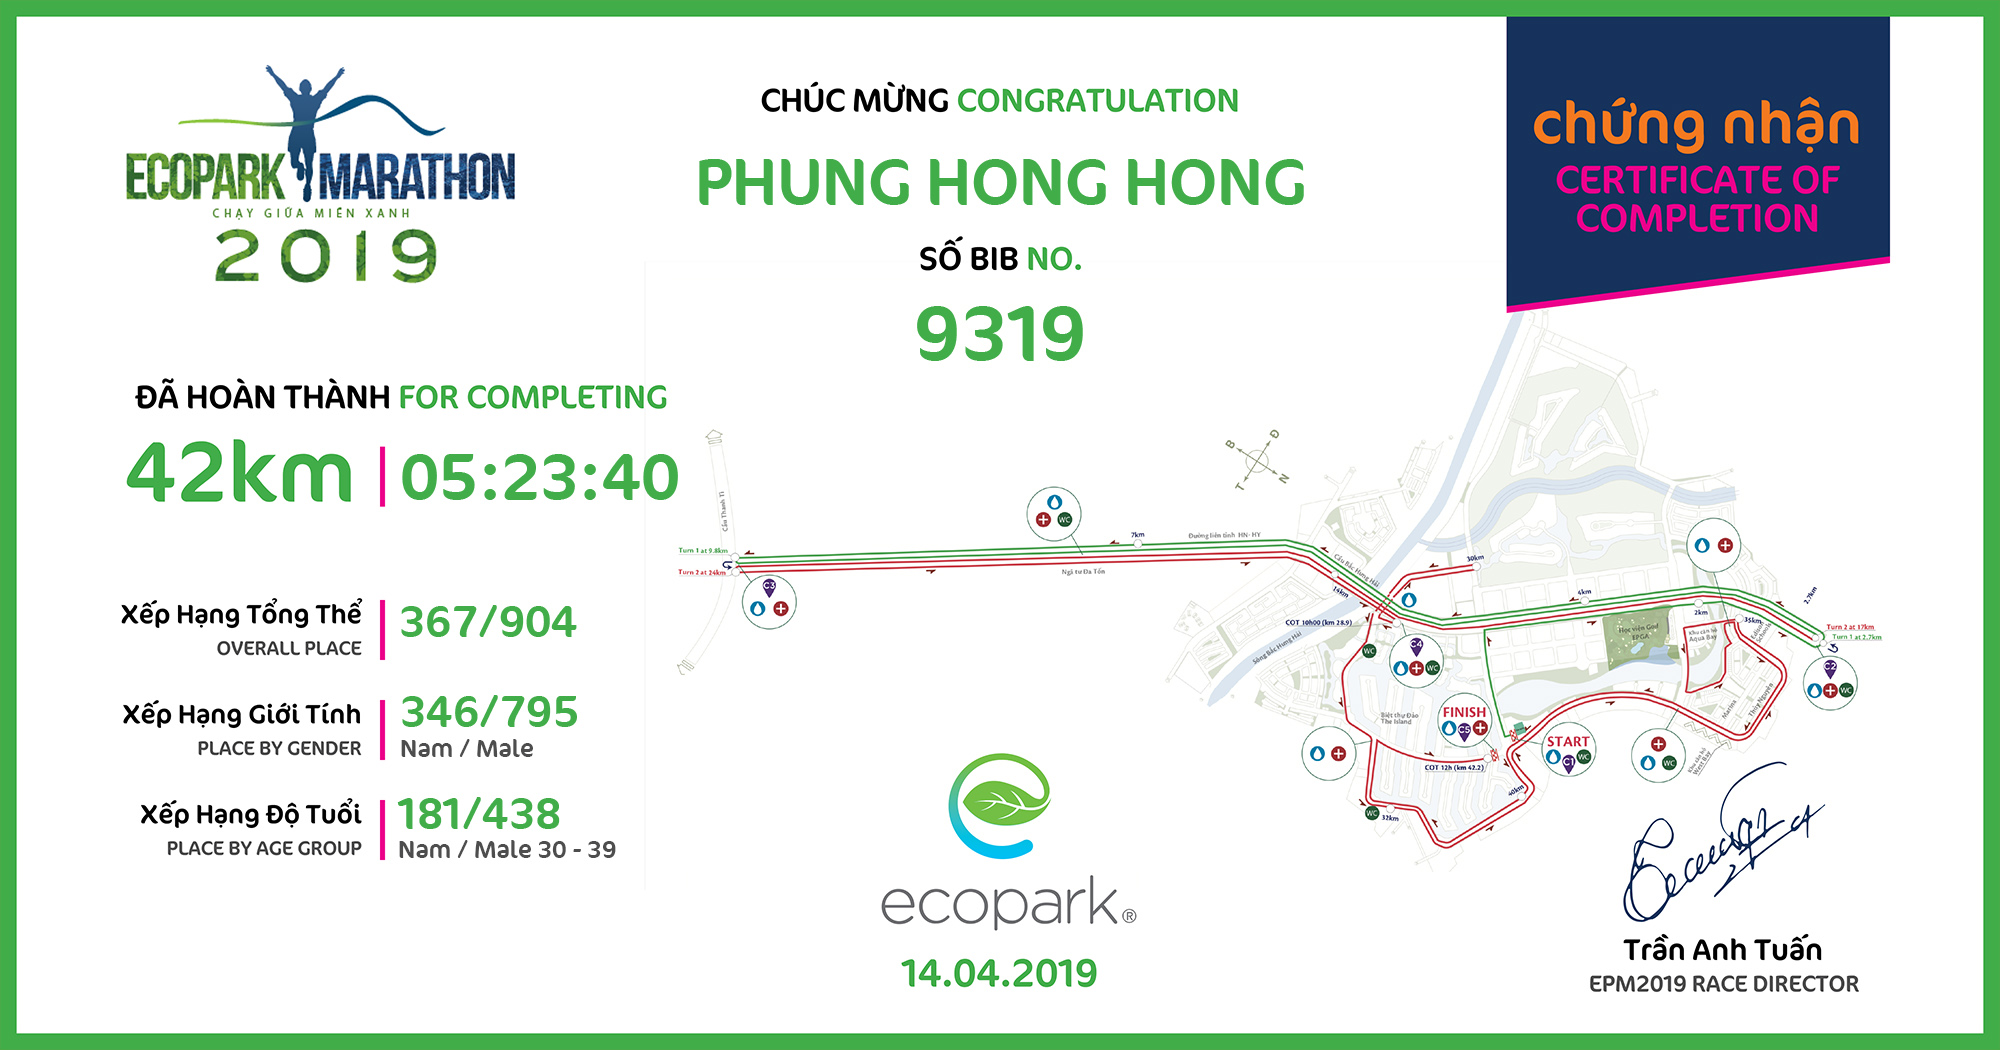 9319 - Phung Hong Hong